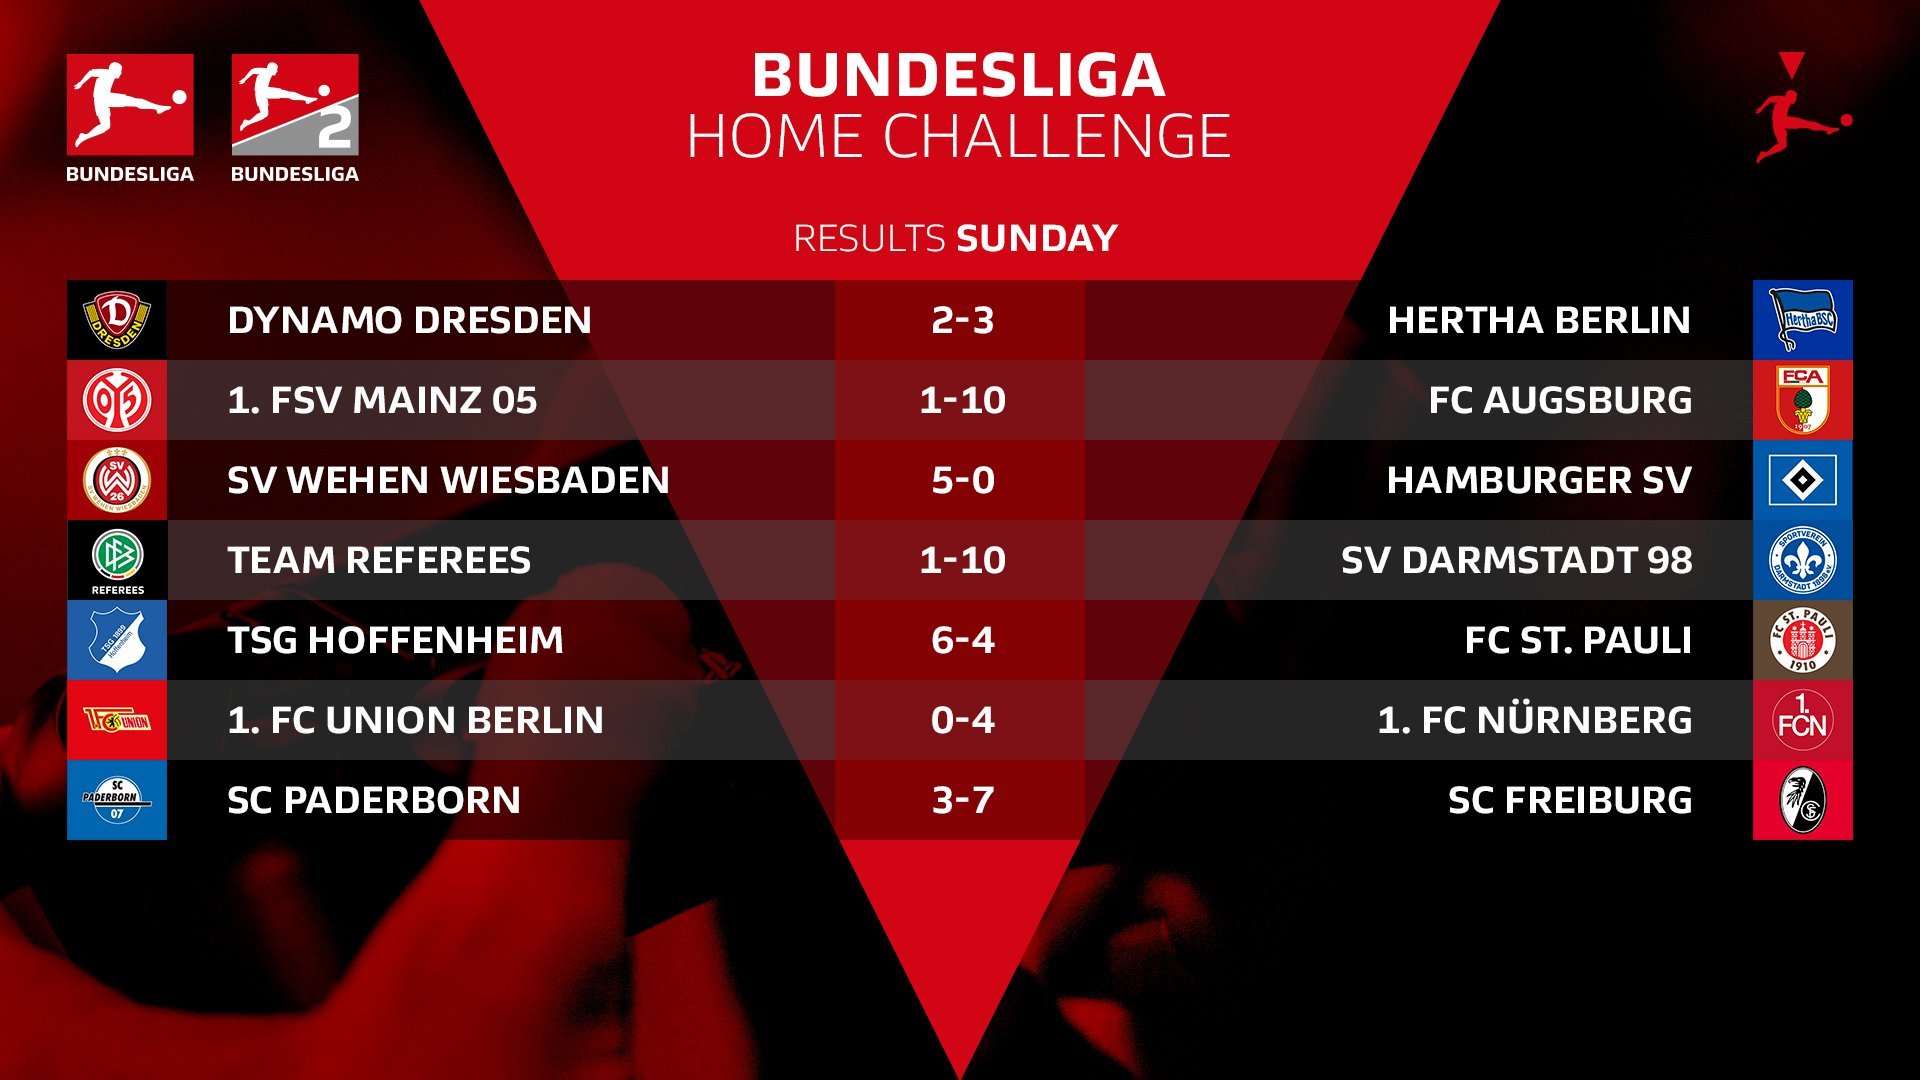 Киберфутбол. FIFA 20. Бундеслига. #BundesligaHomeChallenge. 3-я игровая неделя. Результаты матчей - изображение 2